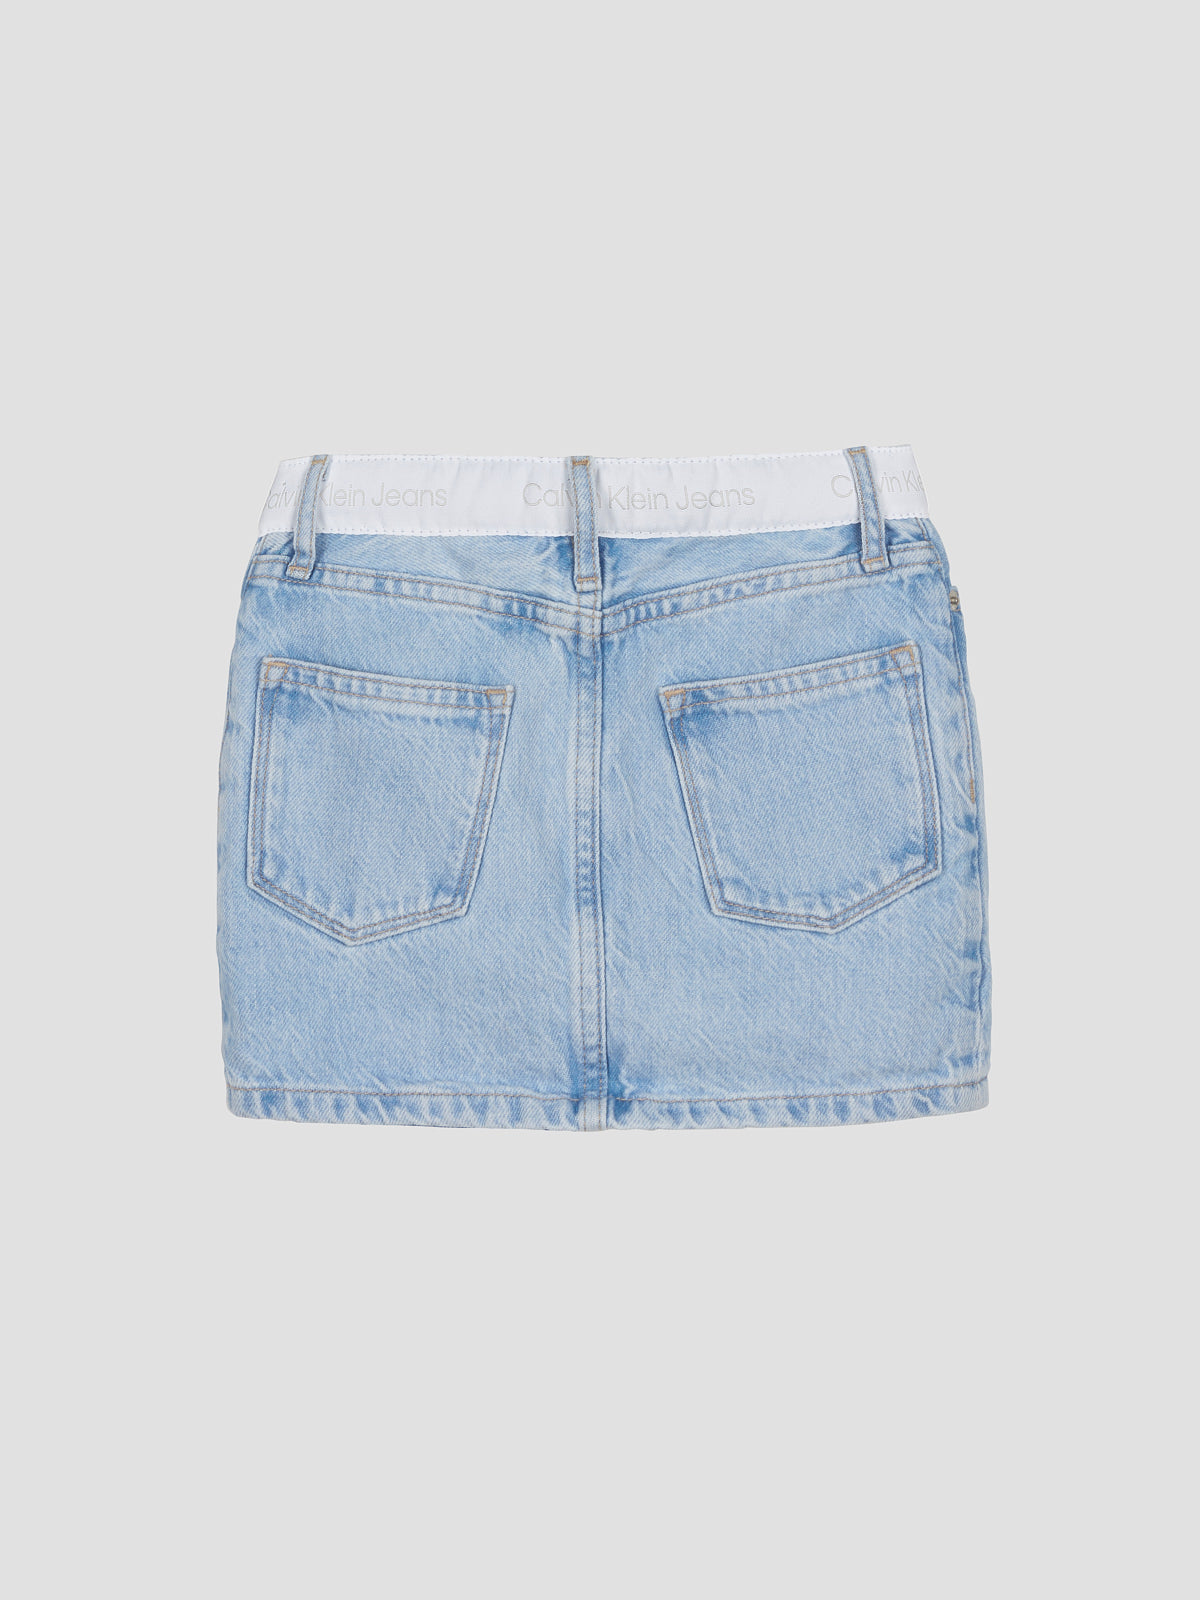 חצאית ג'ינס מיני ממותגת / ילדות- Ck|קלווין קליין